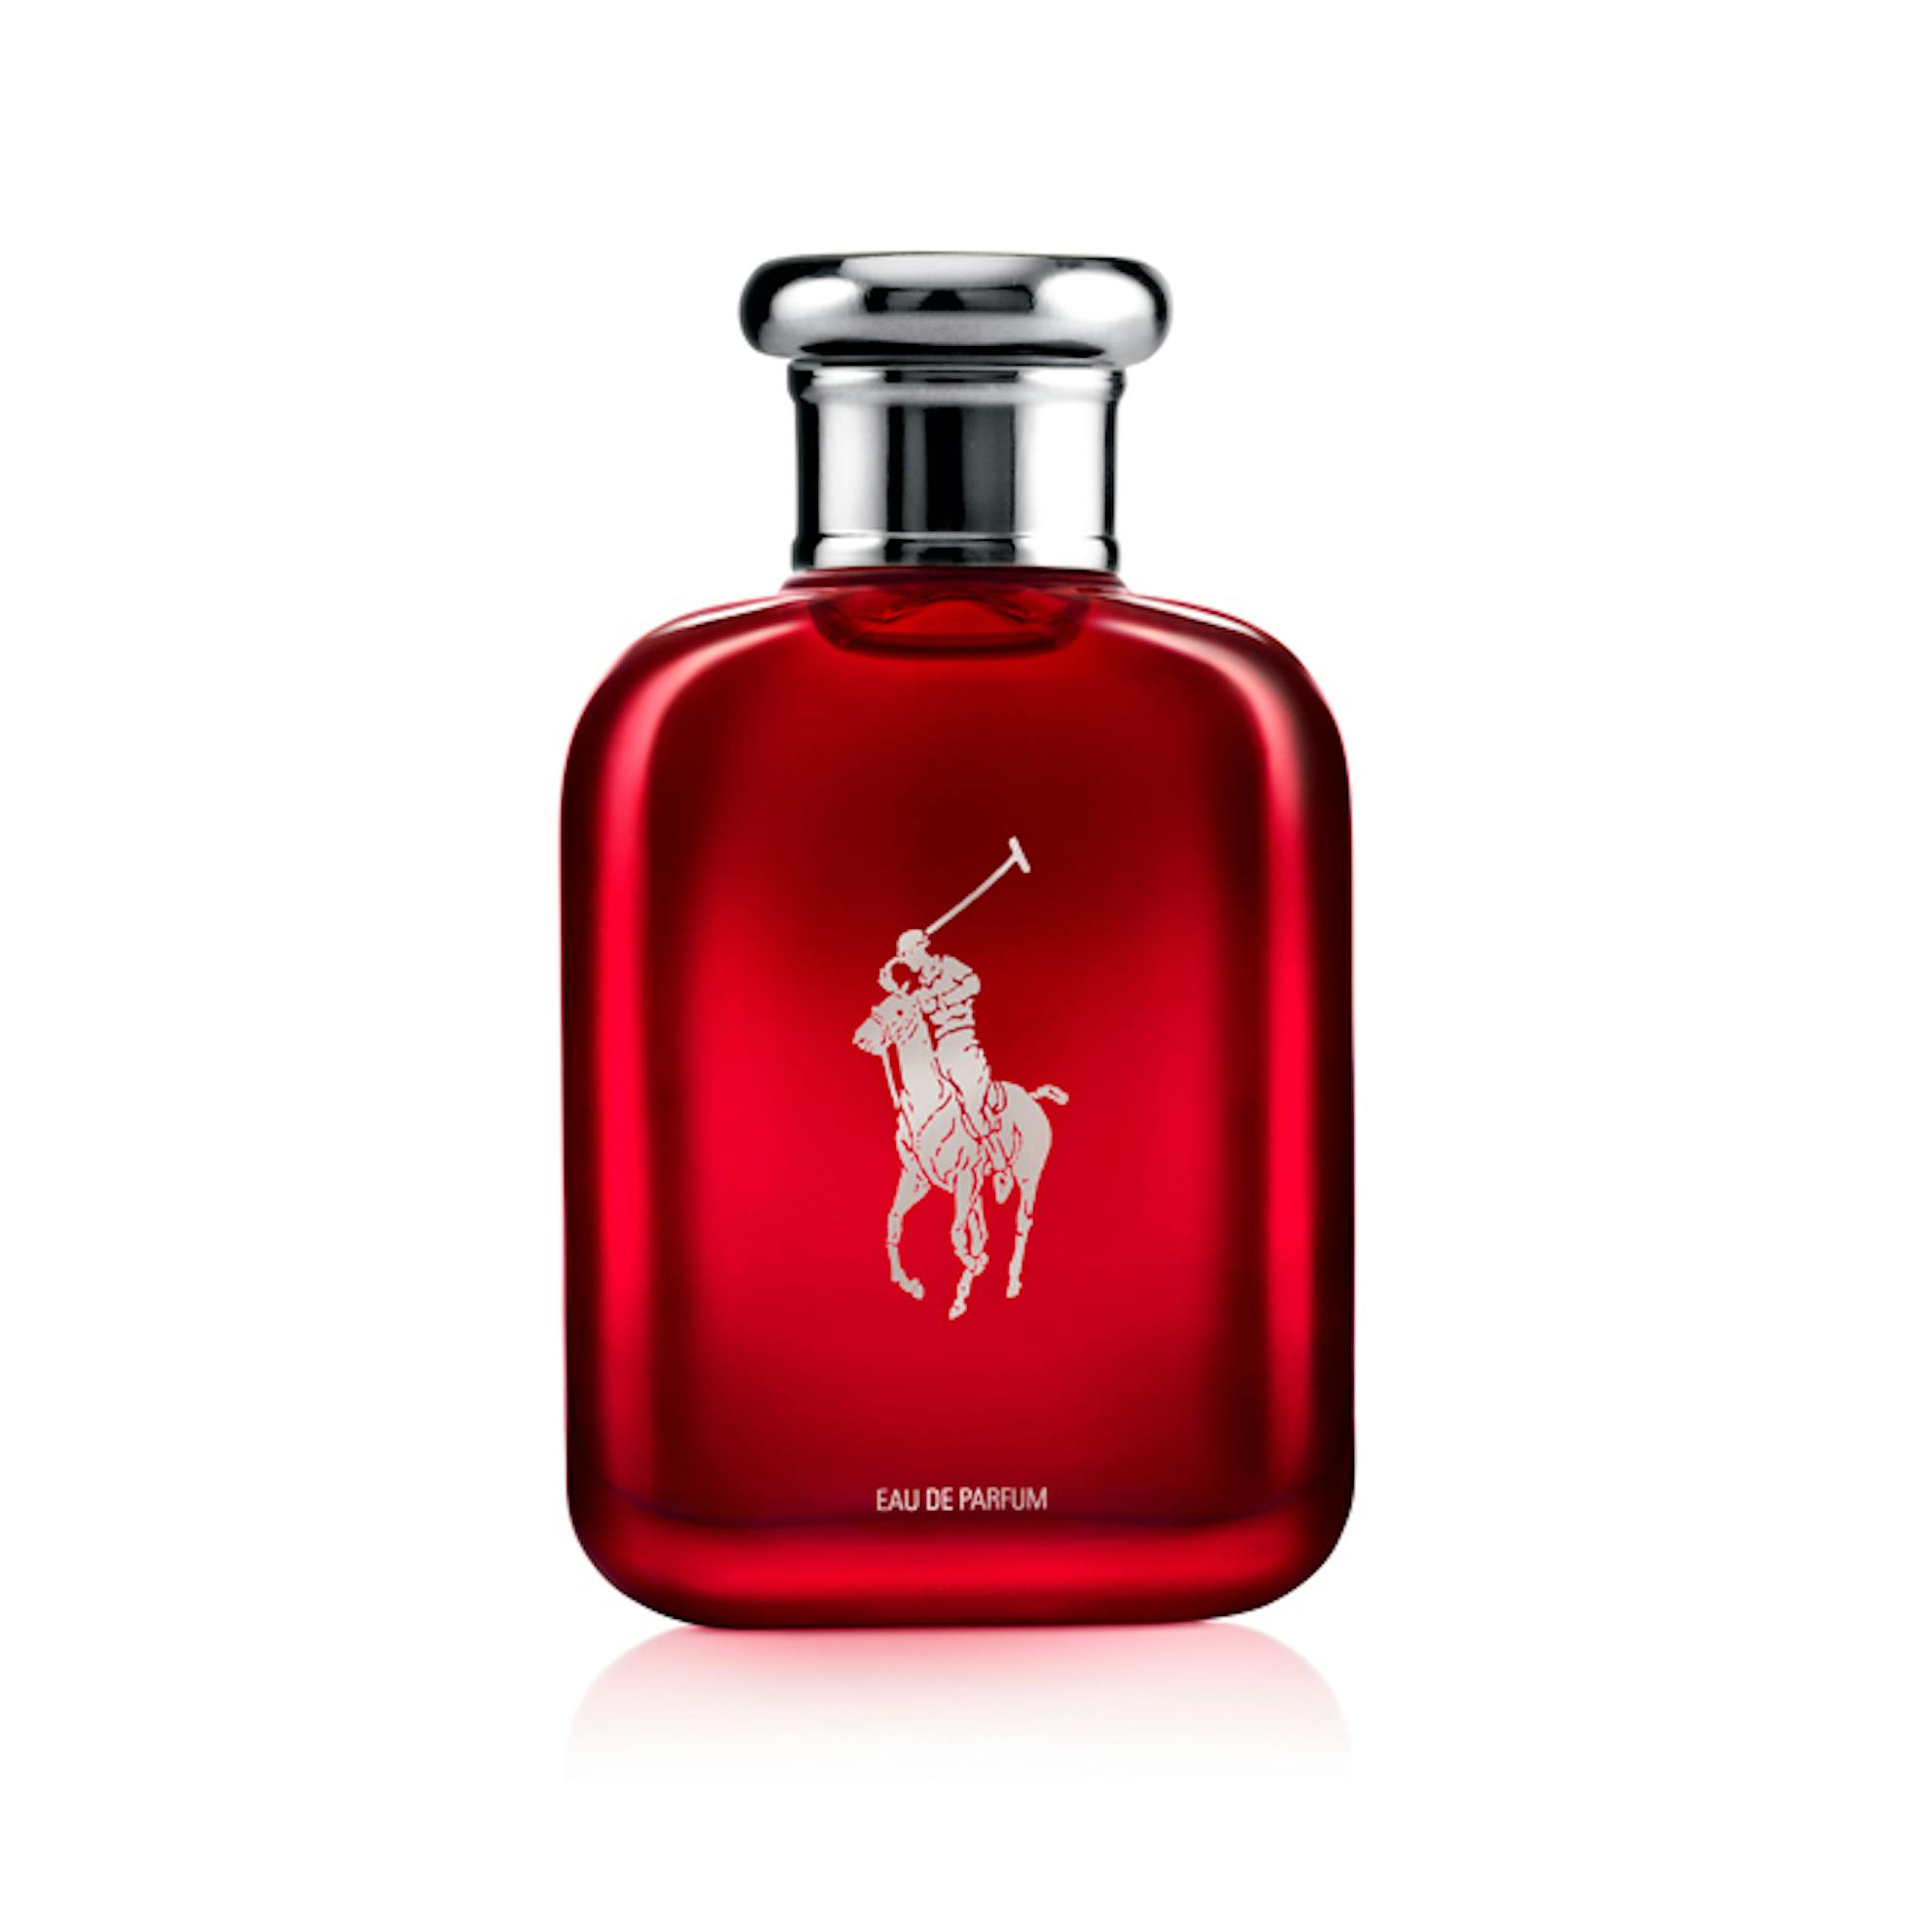 Ralph Lauren Polo Red Eau de Parfum| men's fragrance| The Fragrance Shop |  The Fragrance Shop